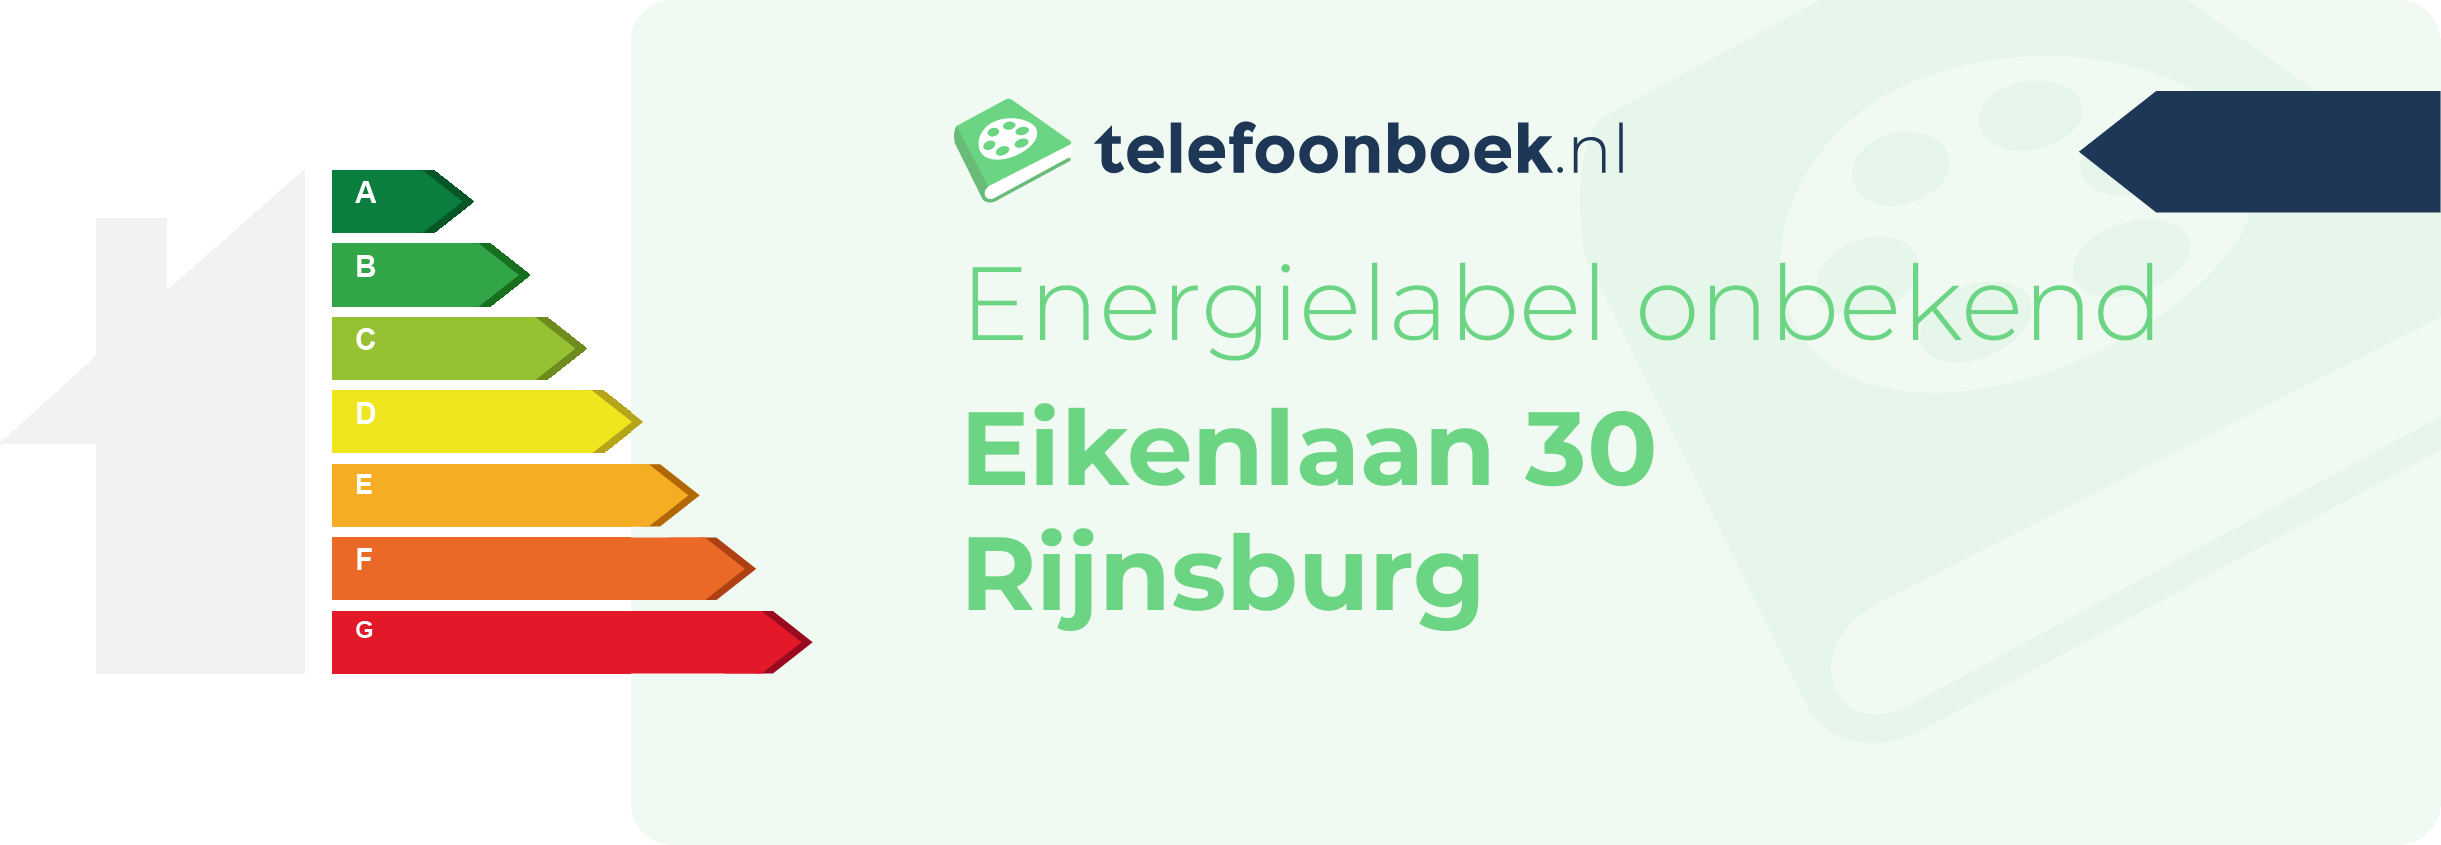 Energielabel Eikenlaan 30 Rijnsburg